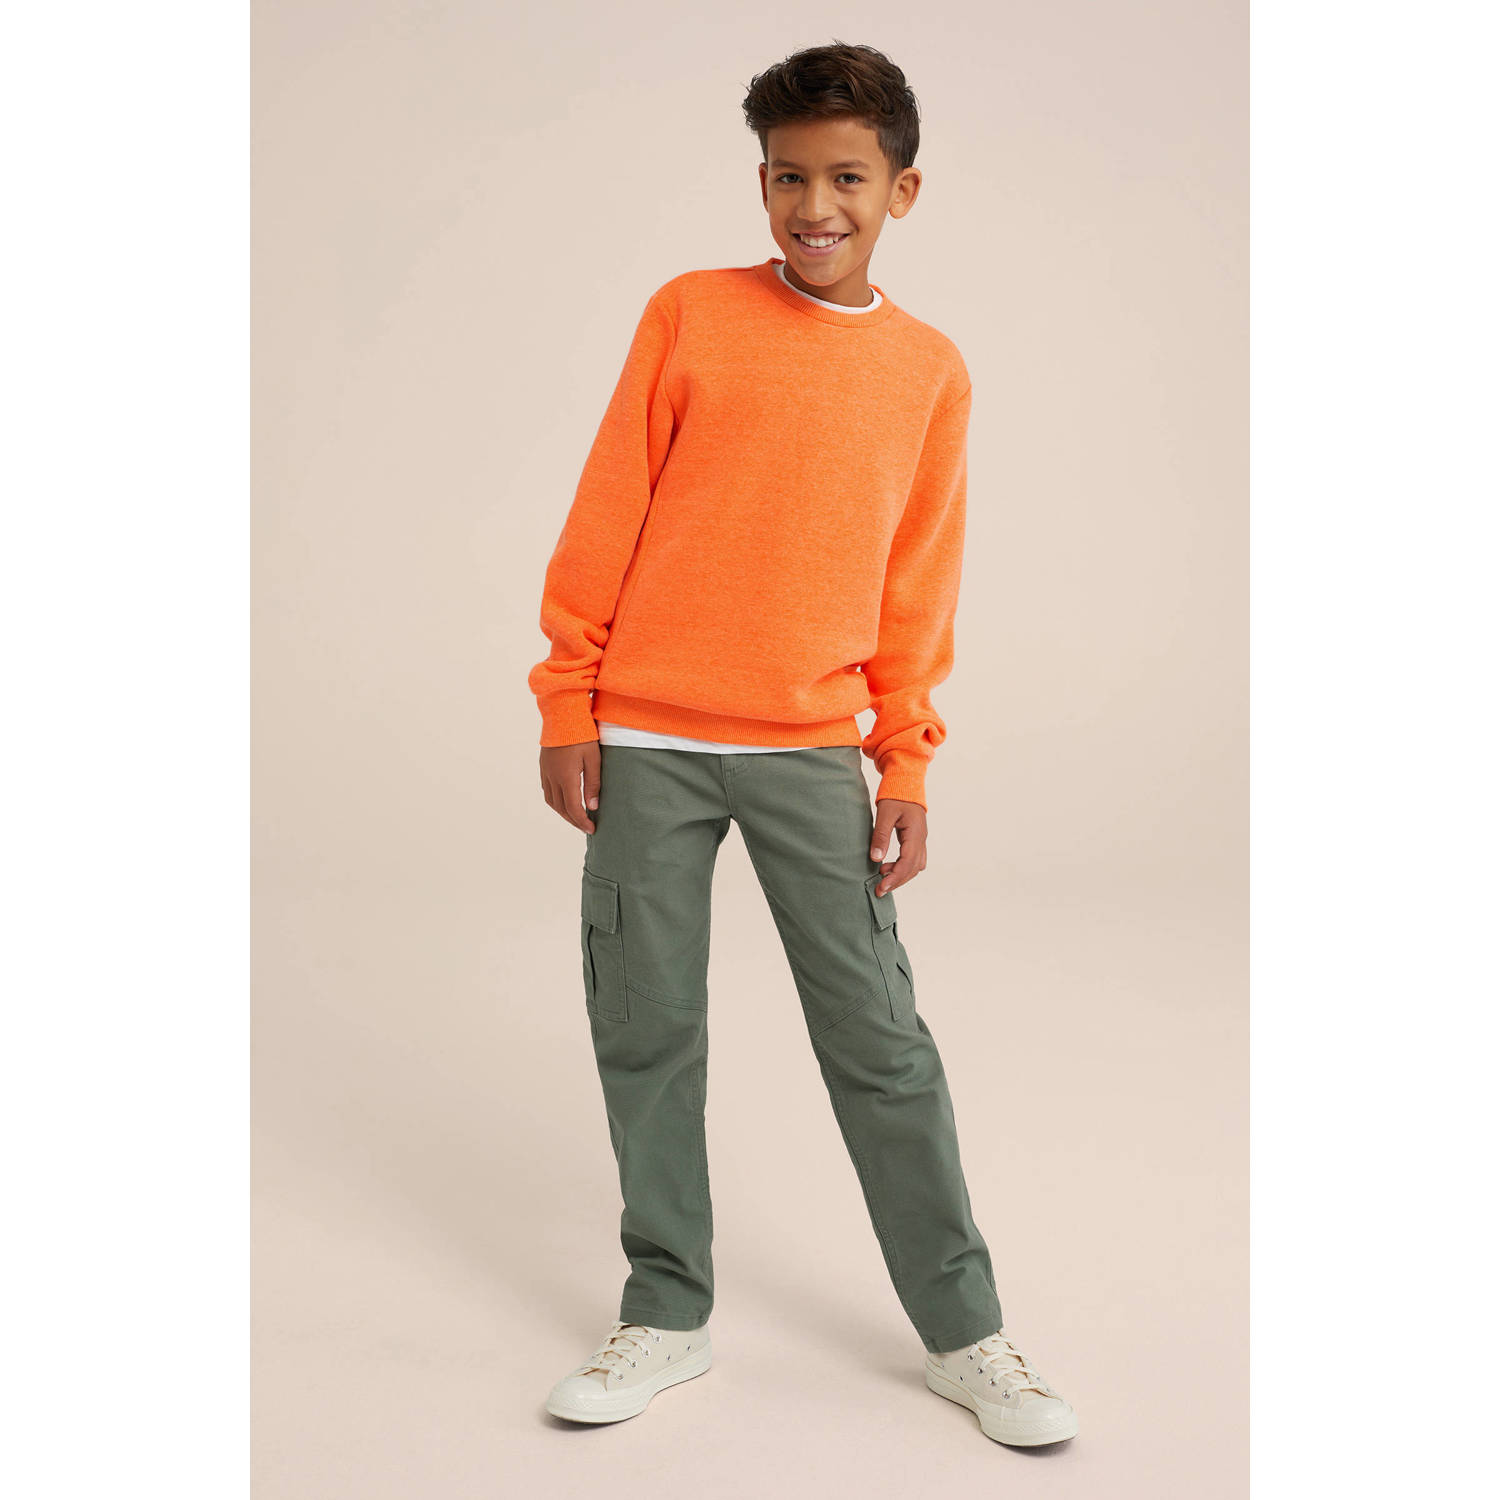 WE Fashion Blue Ridge unisex sweater shocking orange